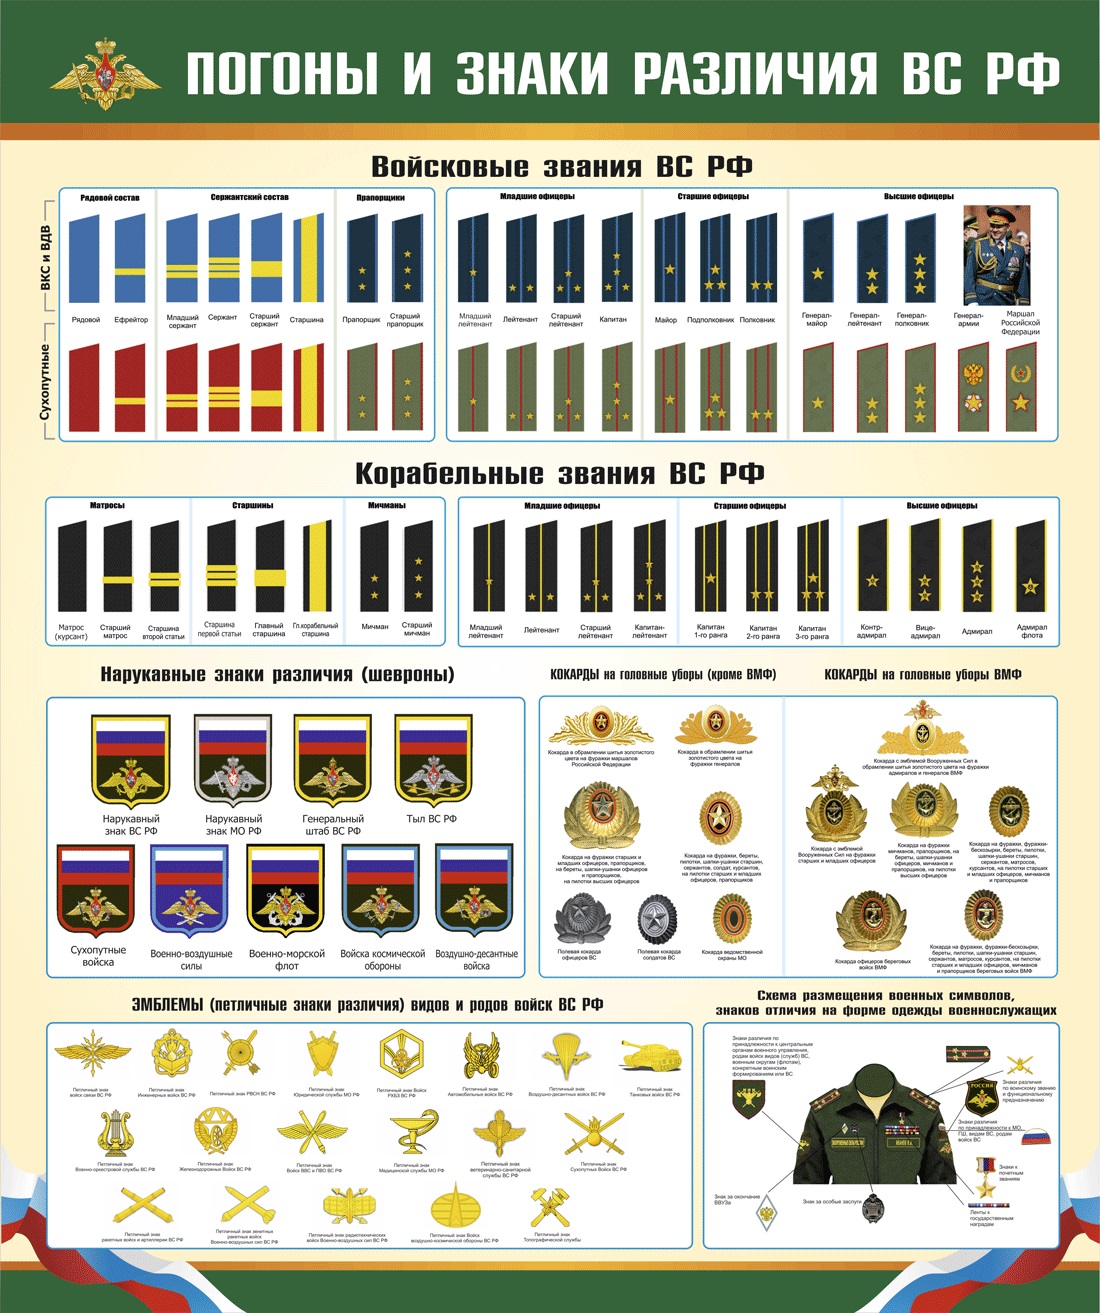 Воинские звания и знаки различия военнослужащих Росси